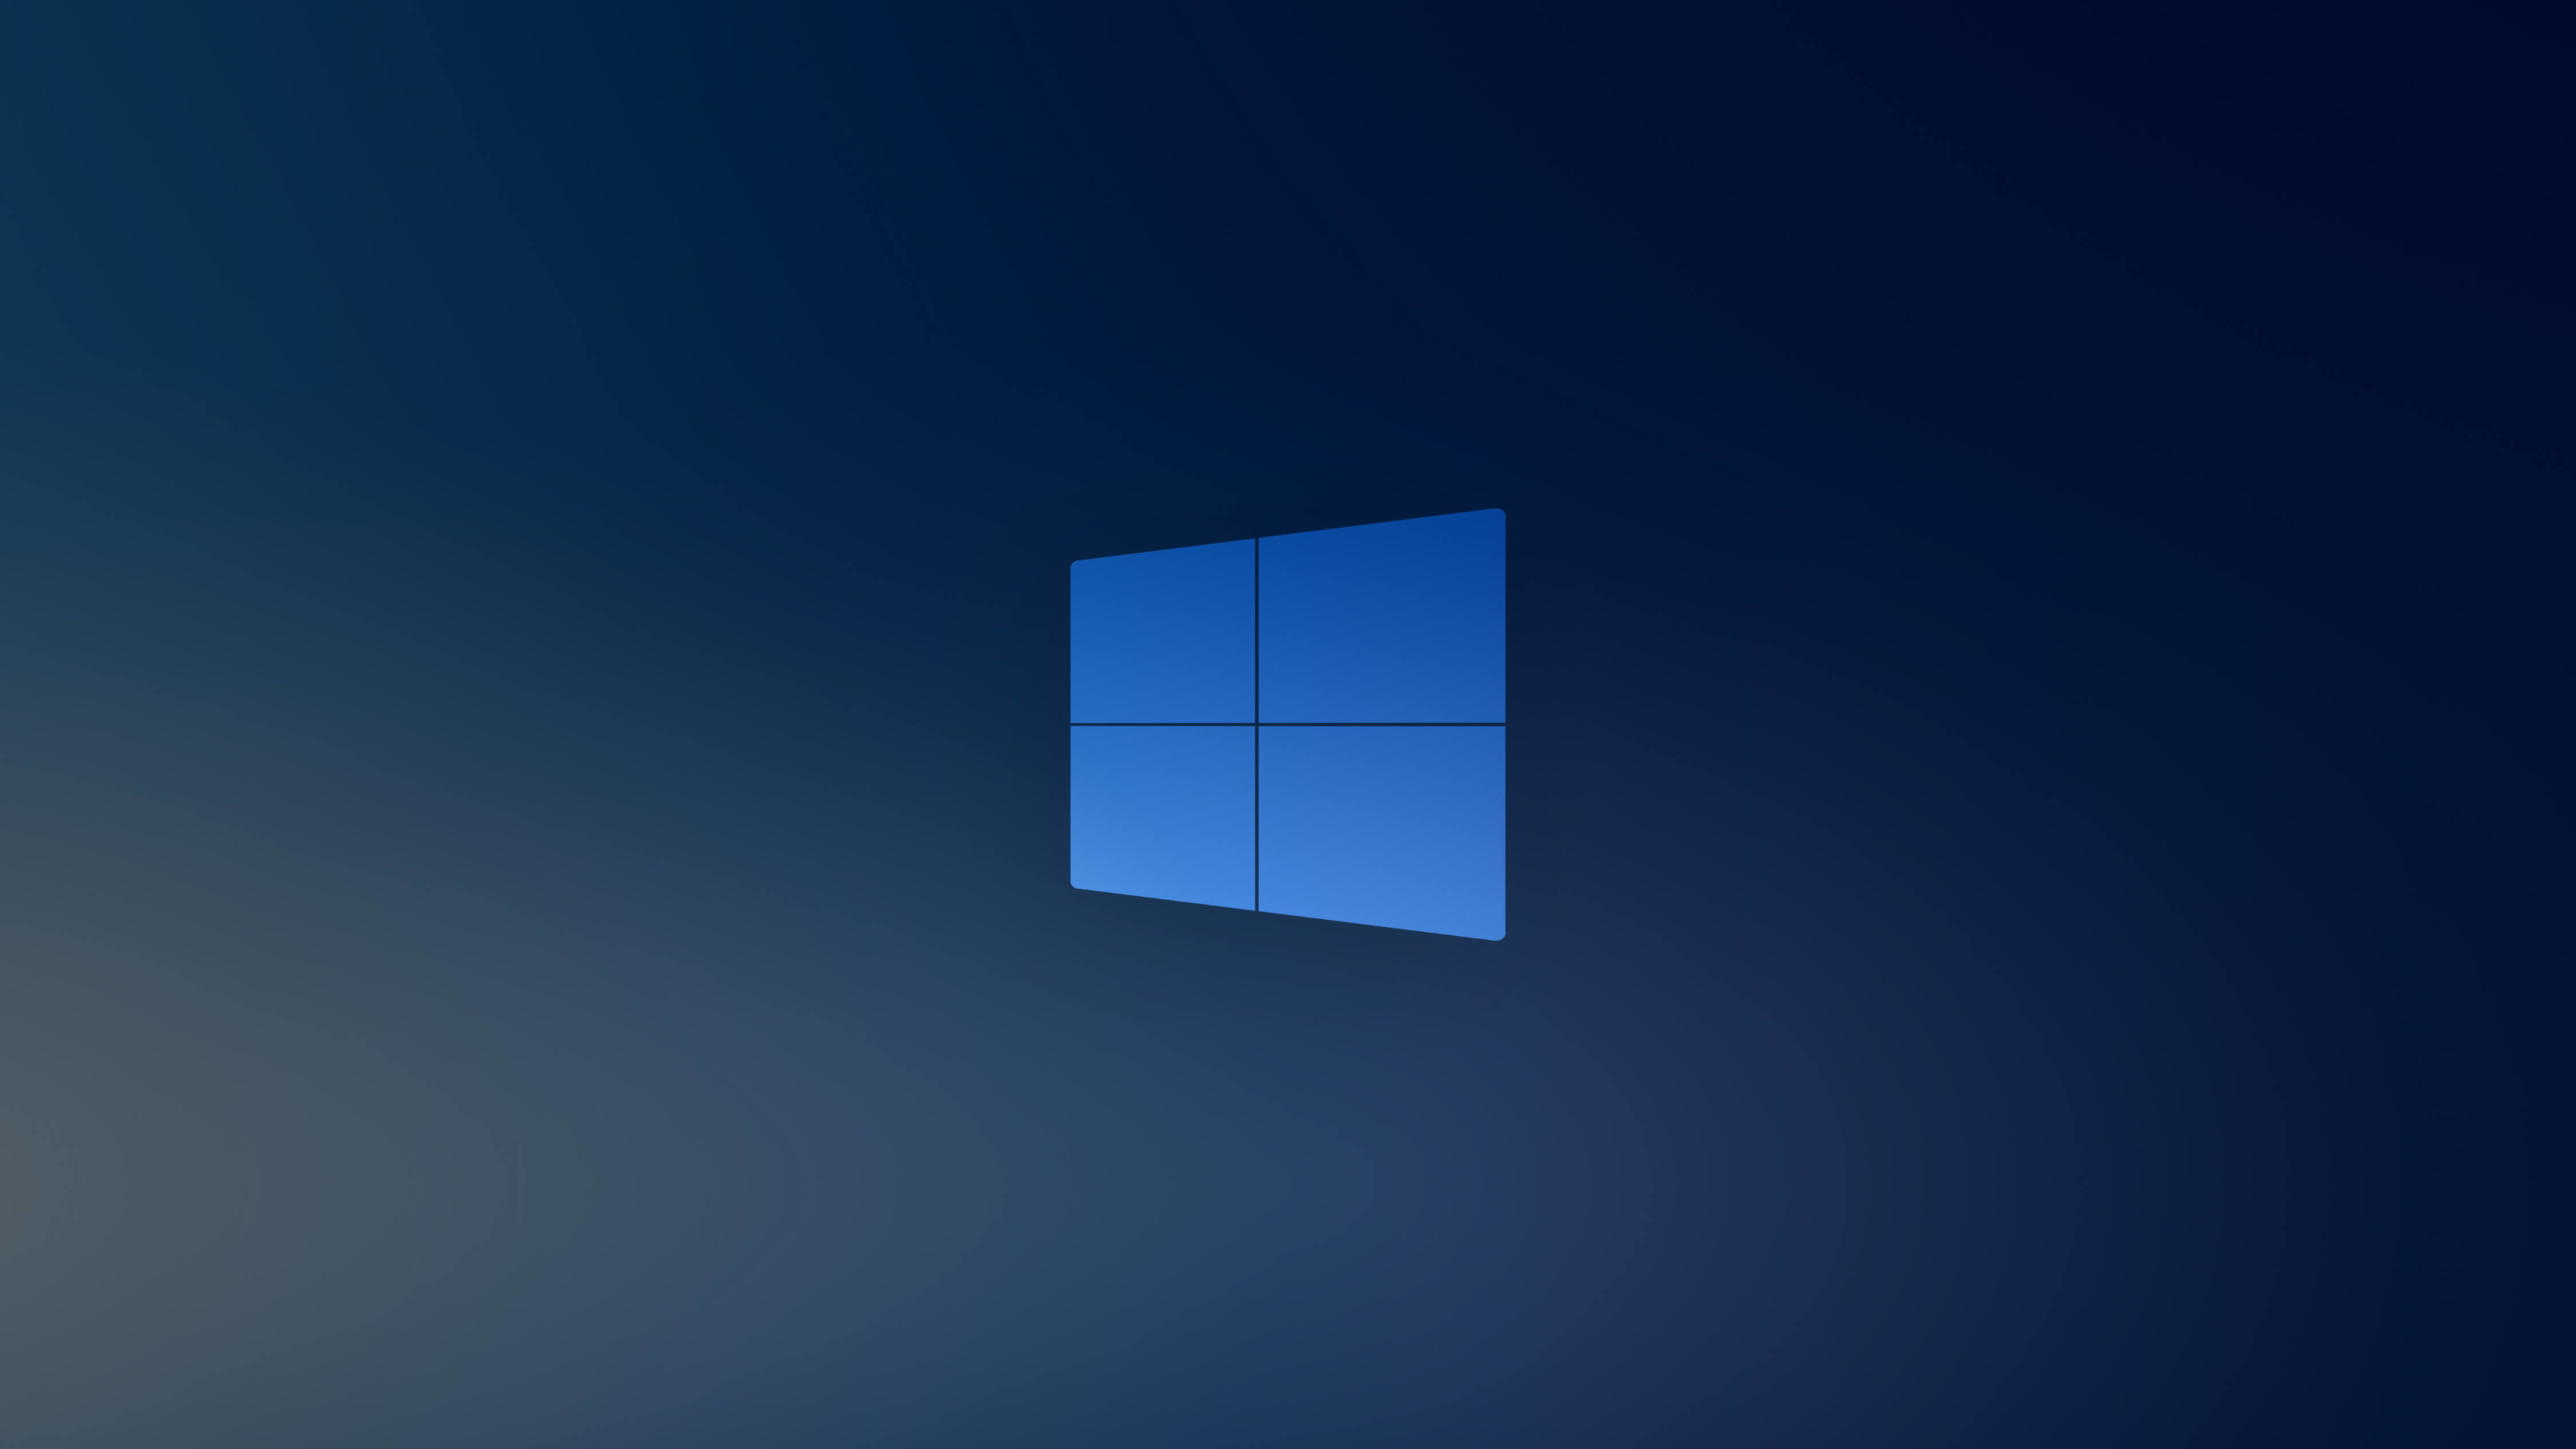 3840x2160 Resolution Windows 10x Blue Logo 4k Wallpaper Wallpapers Den